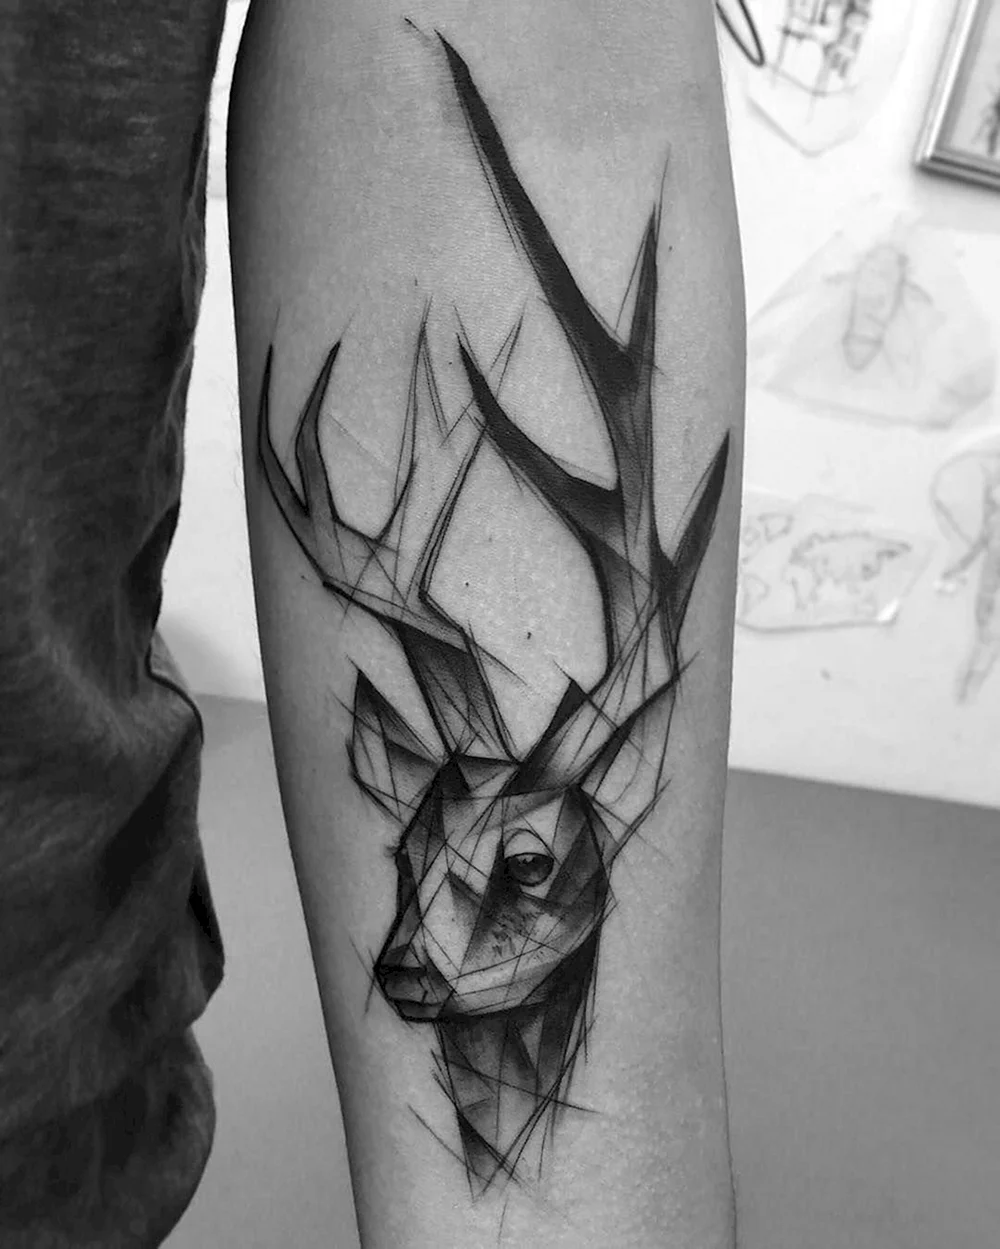 Deer Tattoo Design